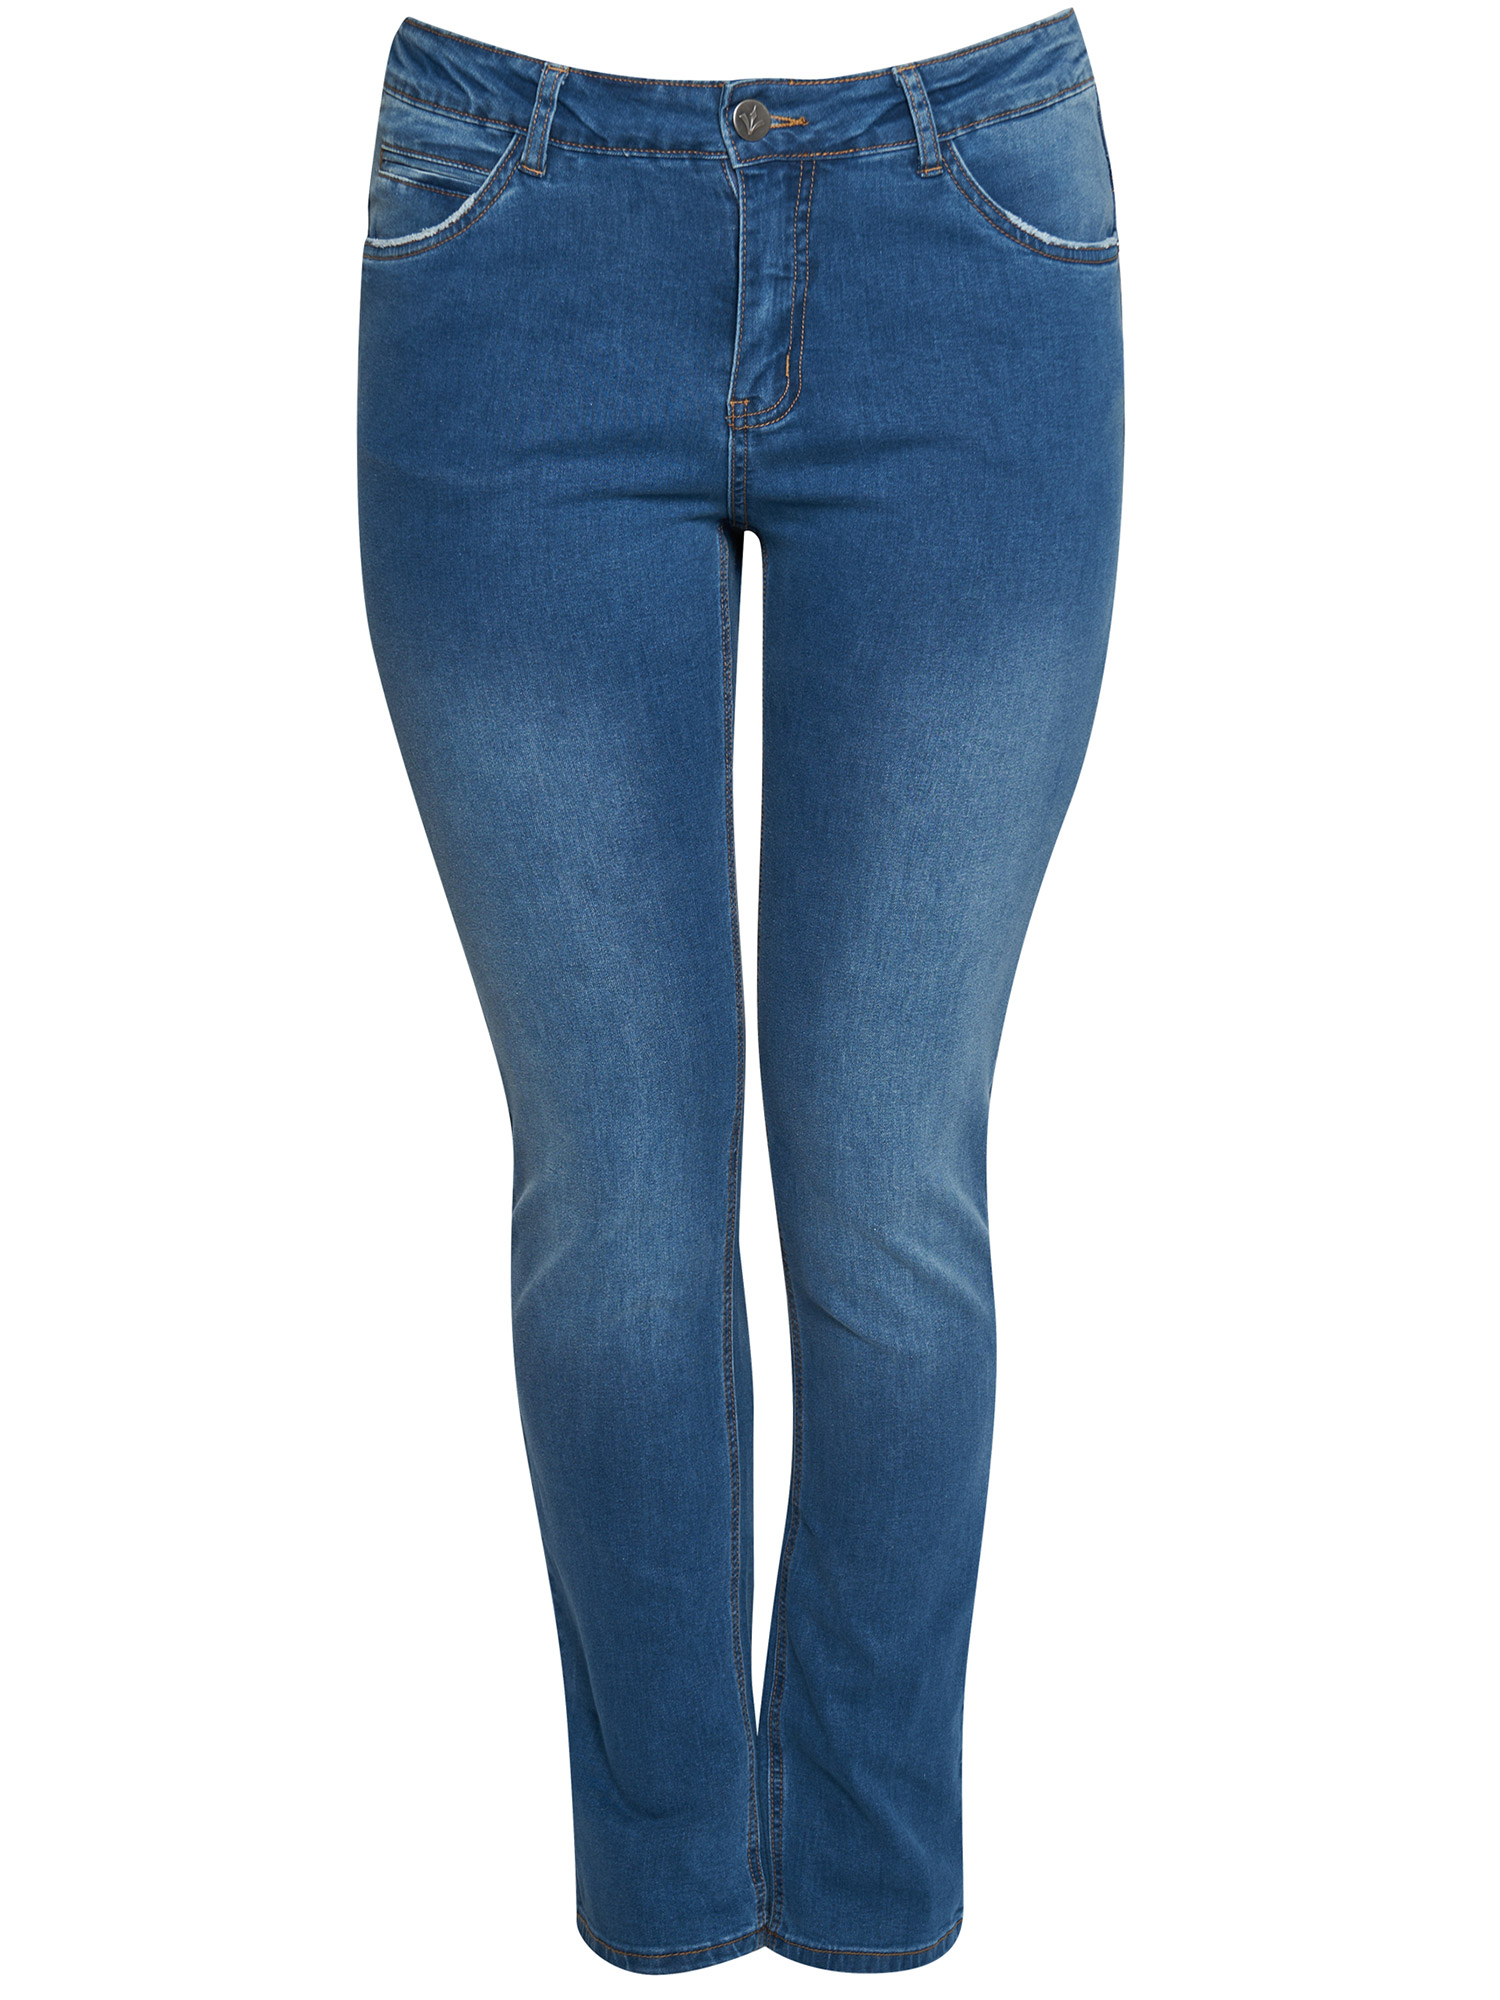 MONACO - Lyse jeans med høyt liv fra Adia